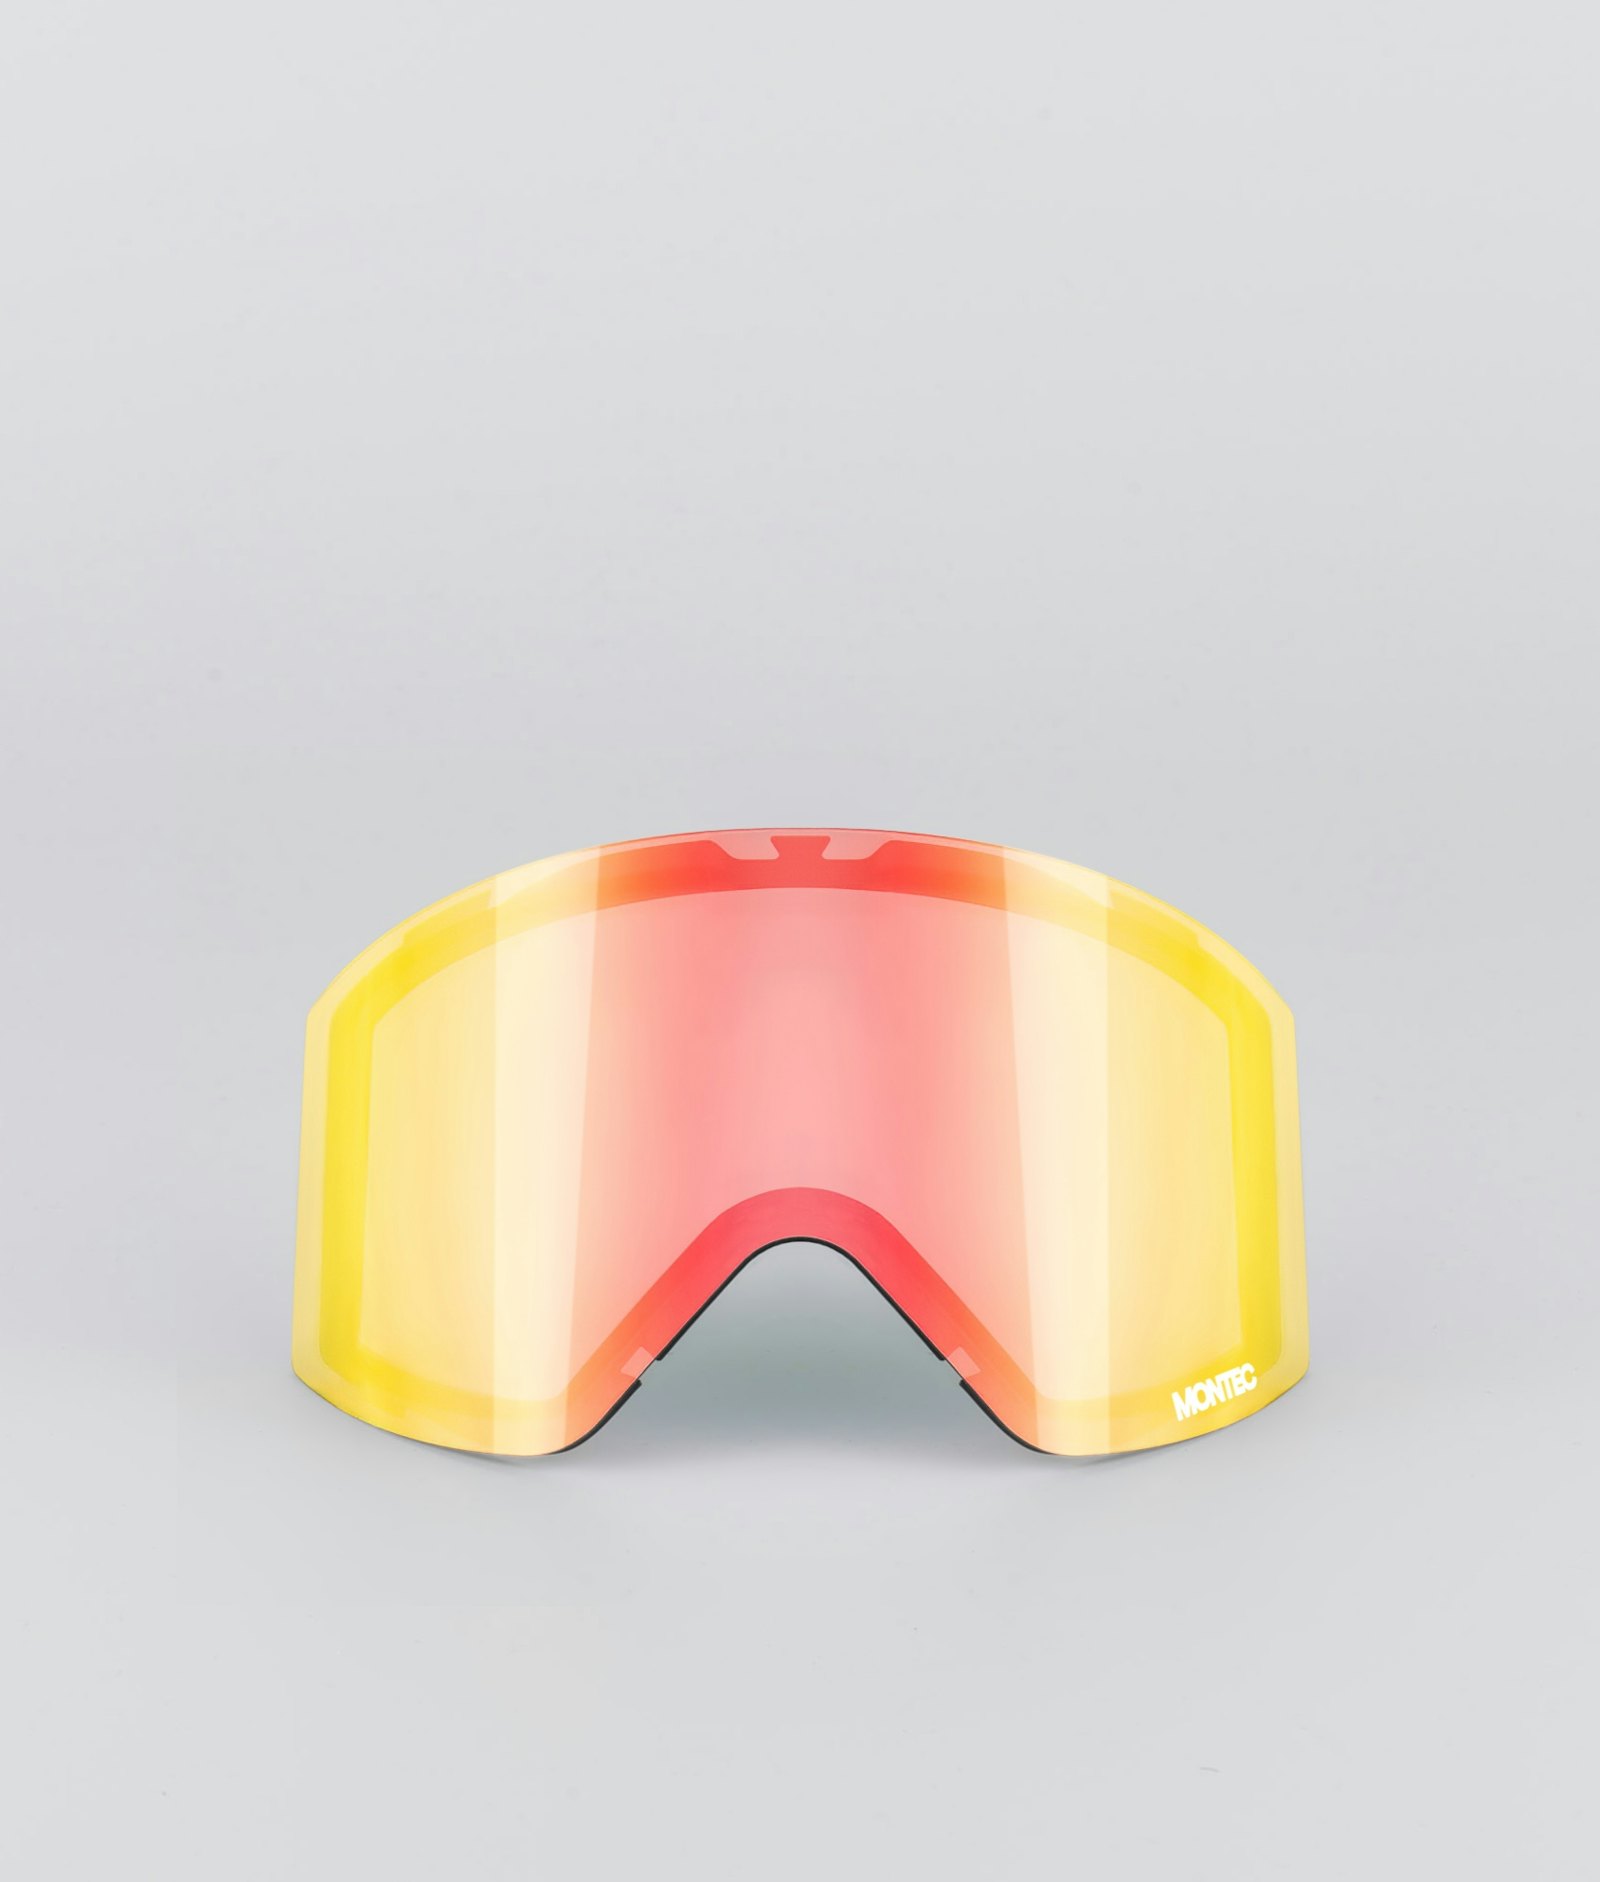 Montec Scope 2020 Goggle Lens Medium Lente de Repuesto Snow Ruby Red